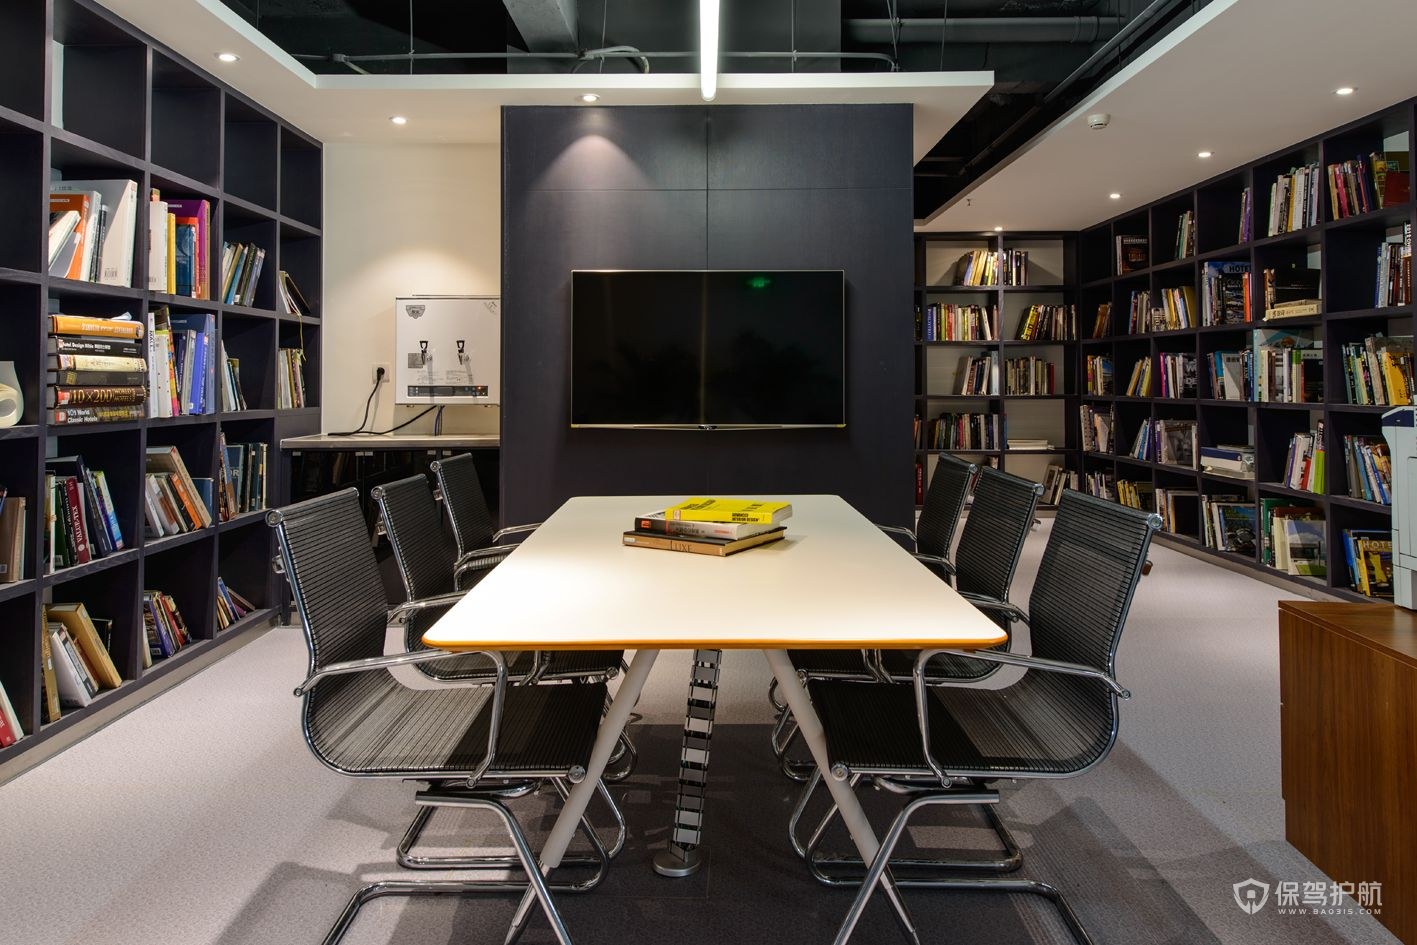 现代简约办公室阅览室装修效果图